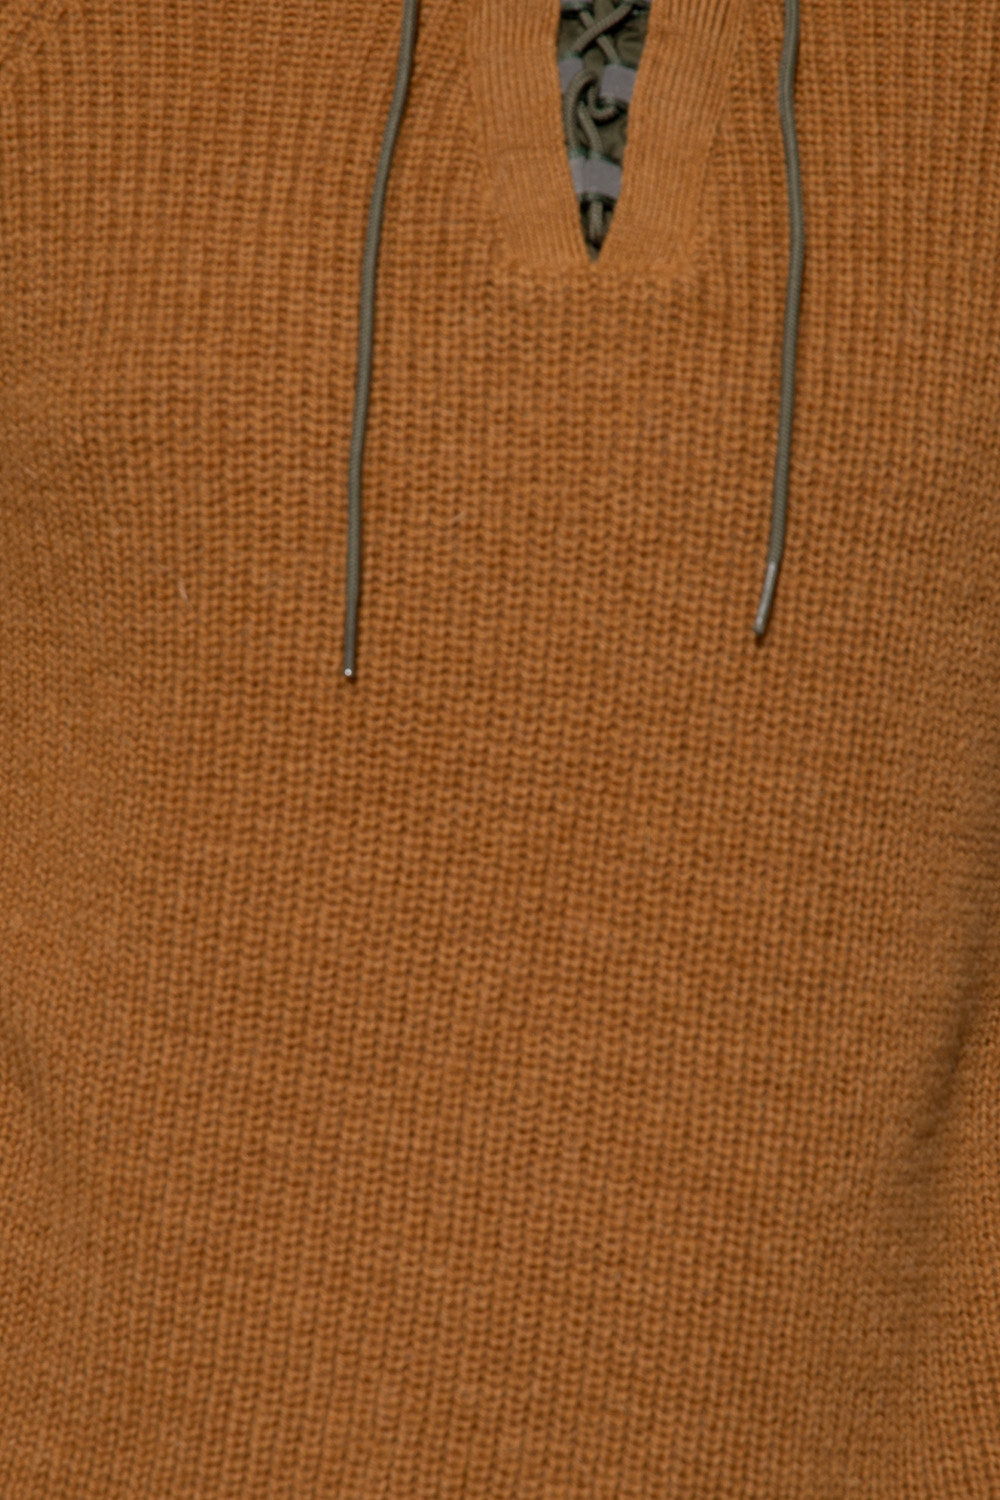 Emporio Armani Wool sweater